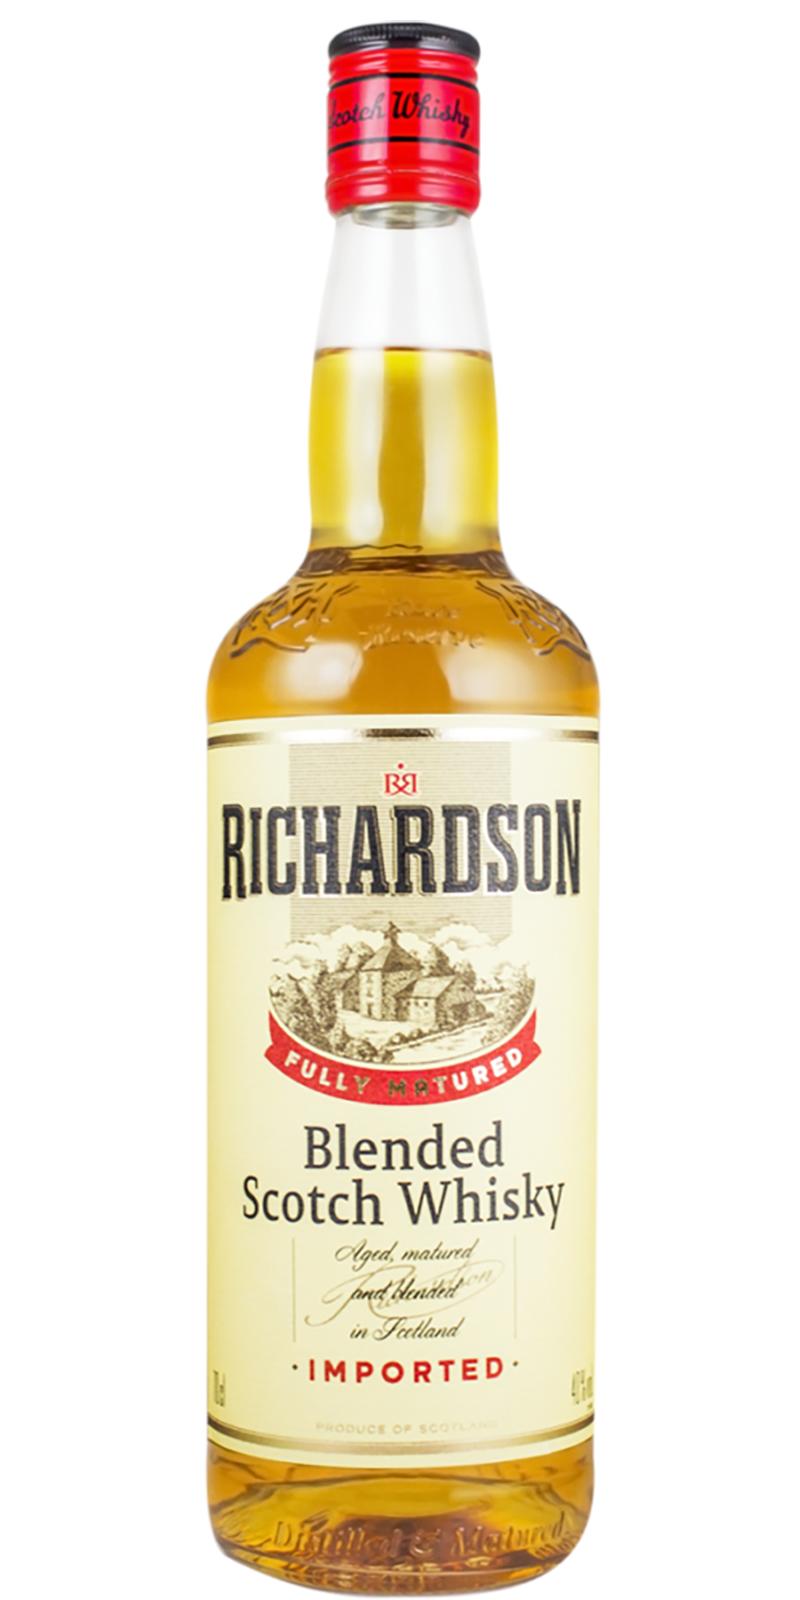 Richardson Blended Scotch Whisky Imported 40% 700ml